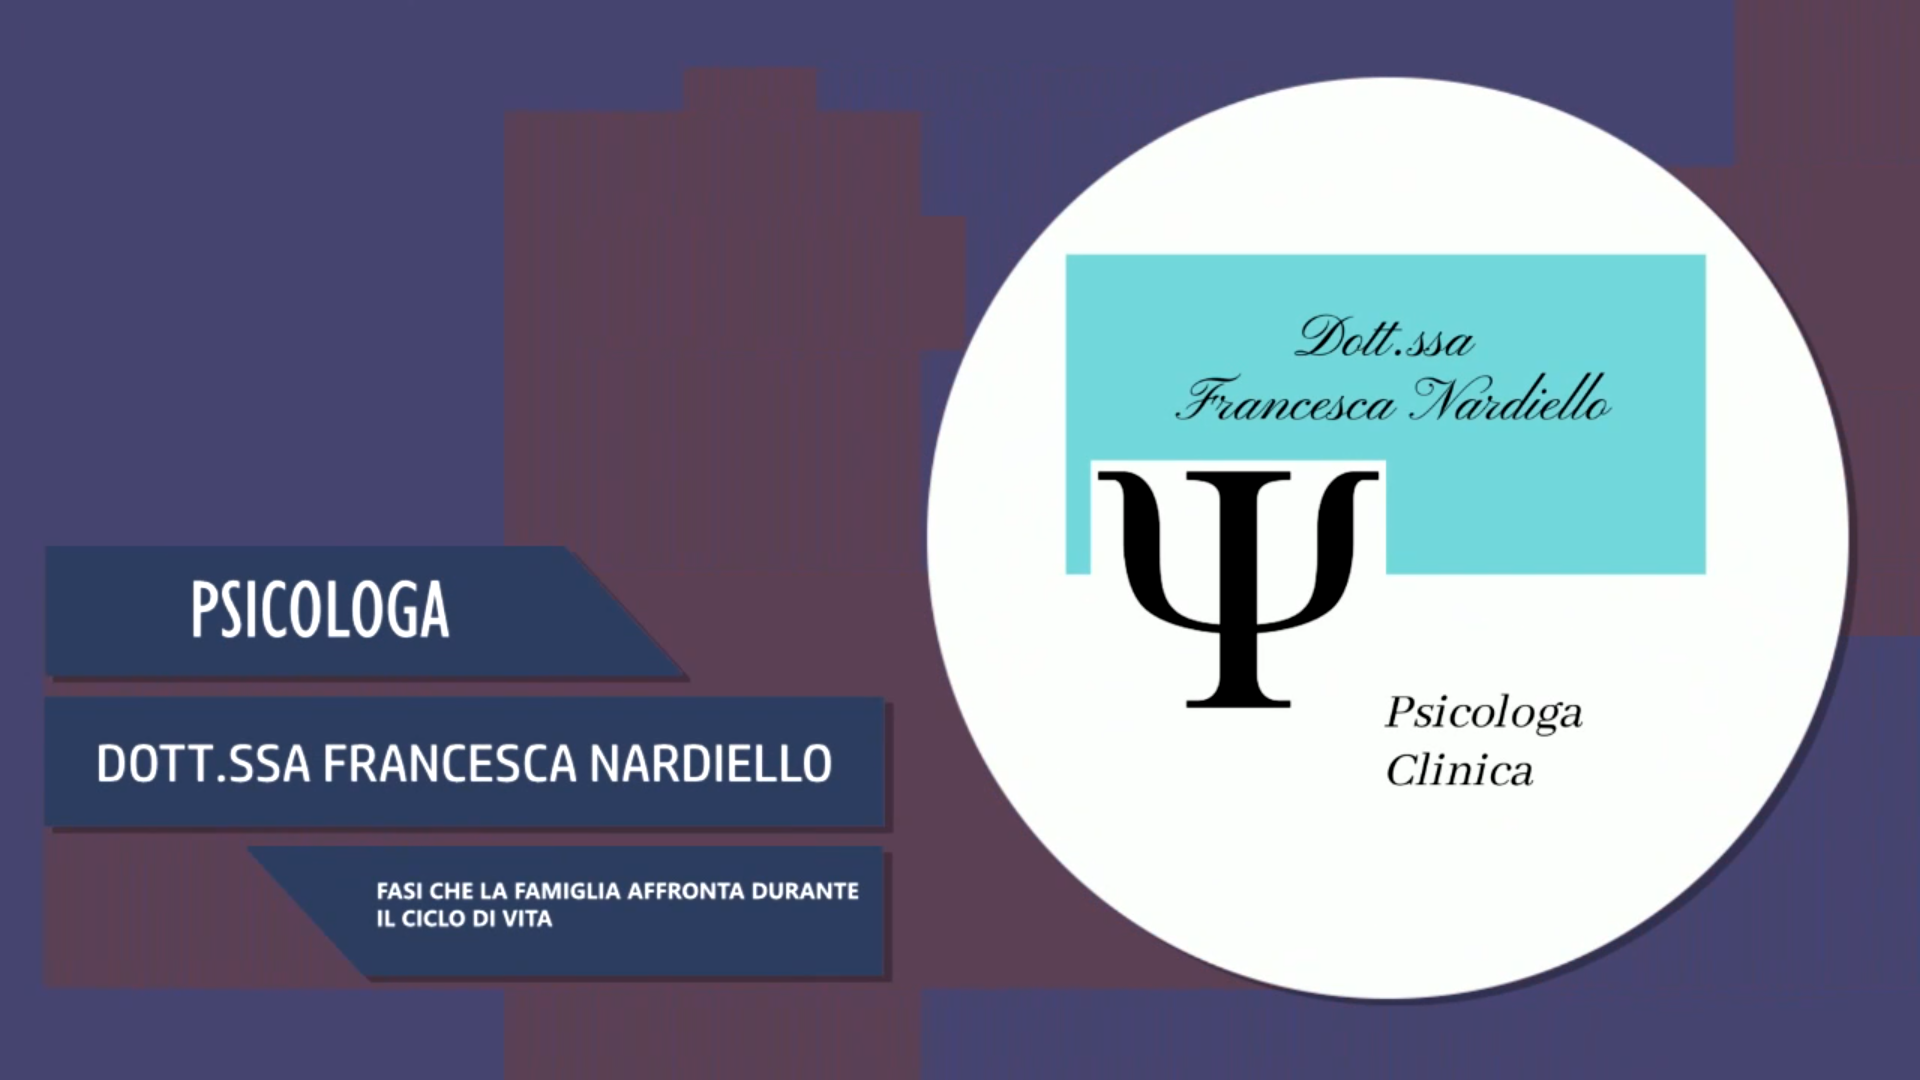 Intervista alla Dott.ssa Francesca Nardiello – Fasi che la famiglia affronta